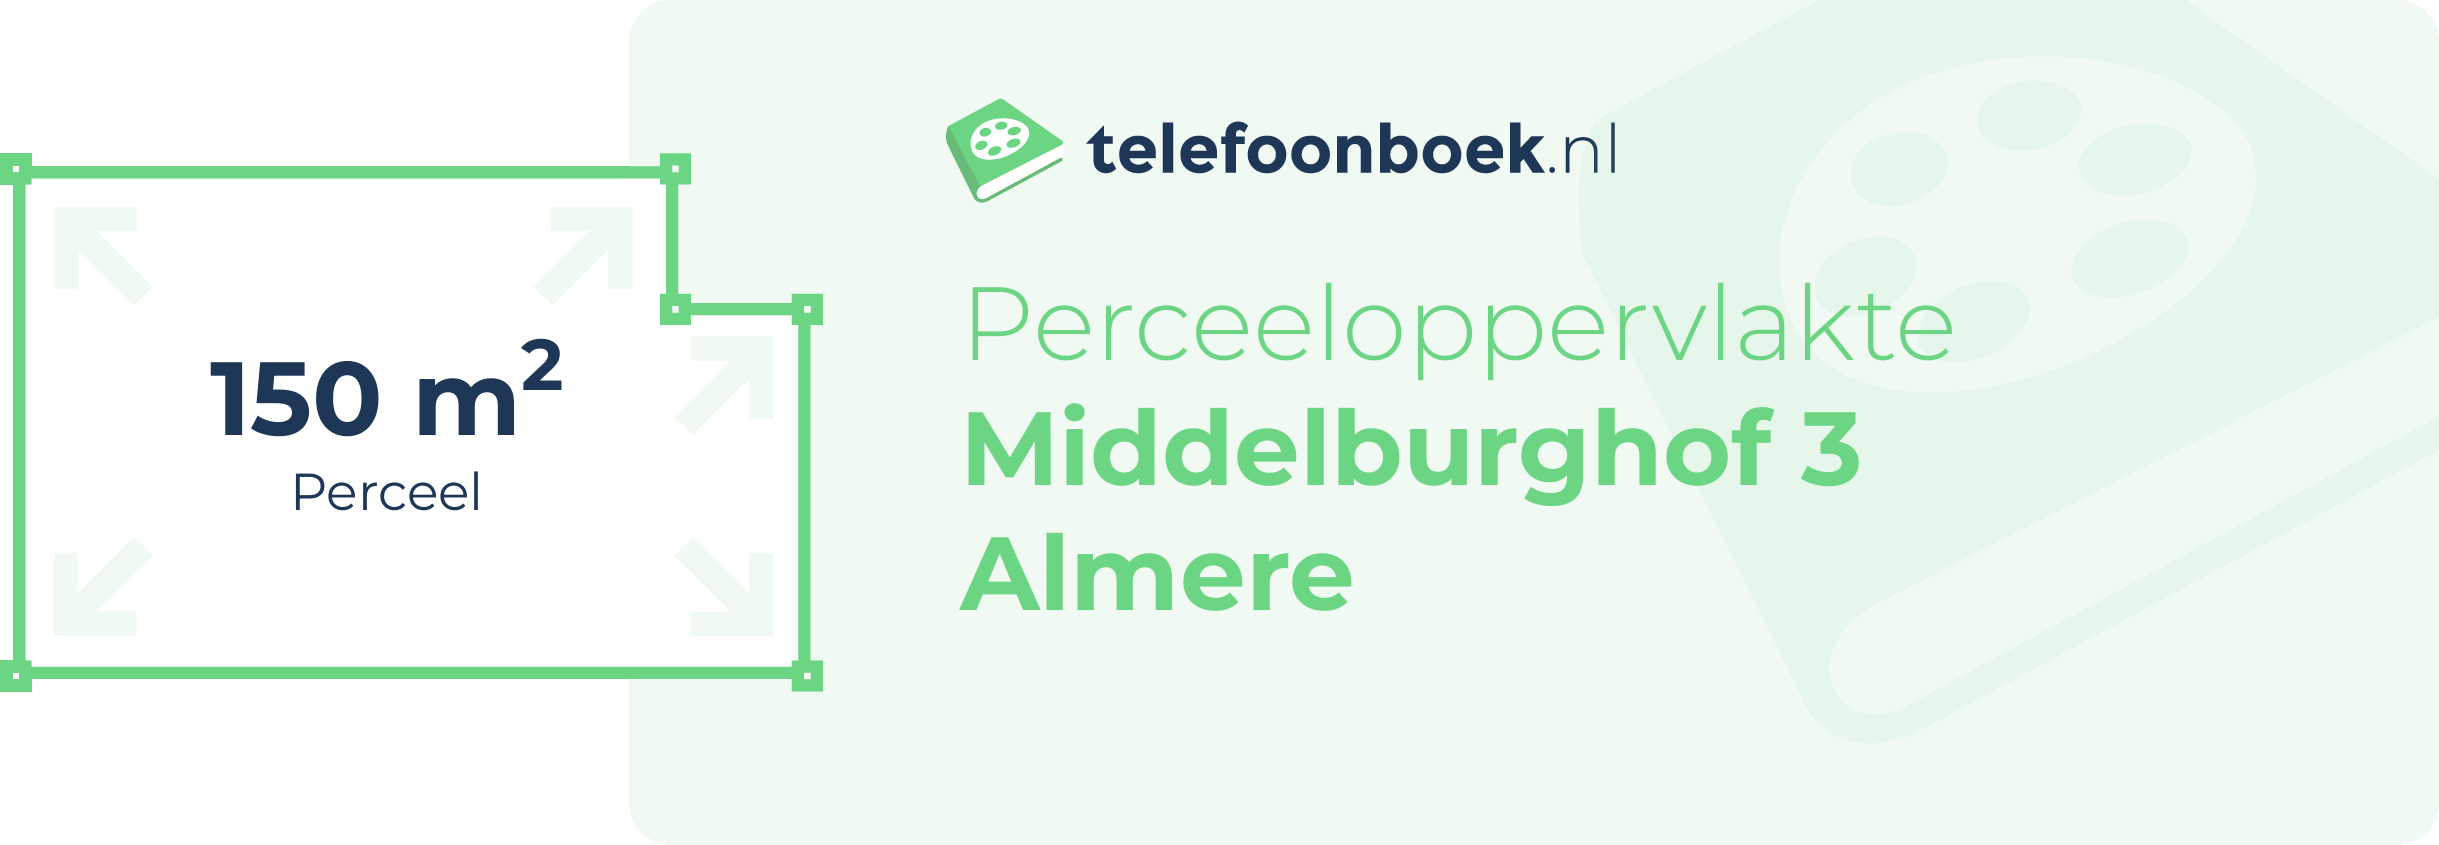 Perceeloppervlakte Middelburghof 3 Almere